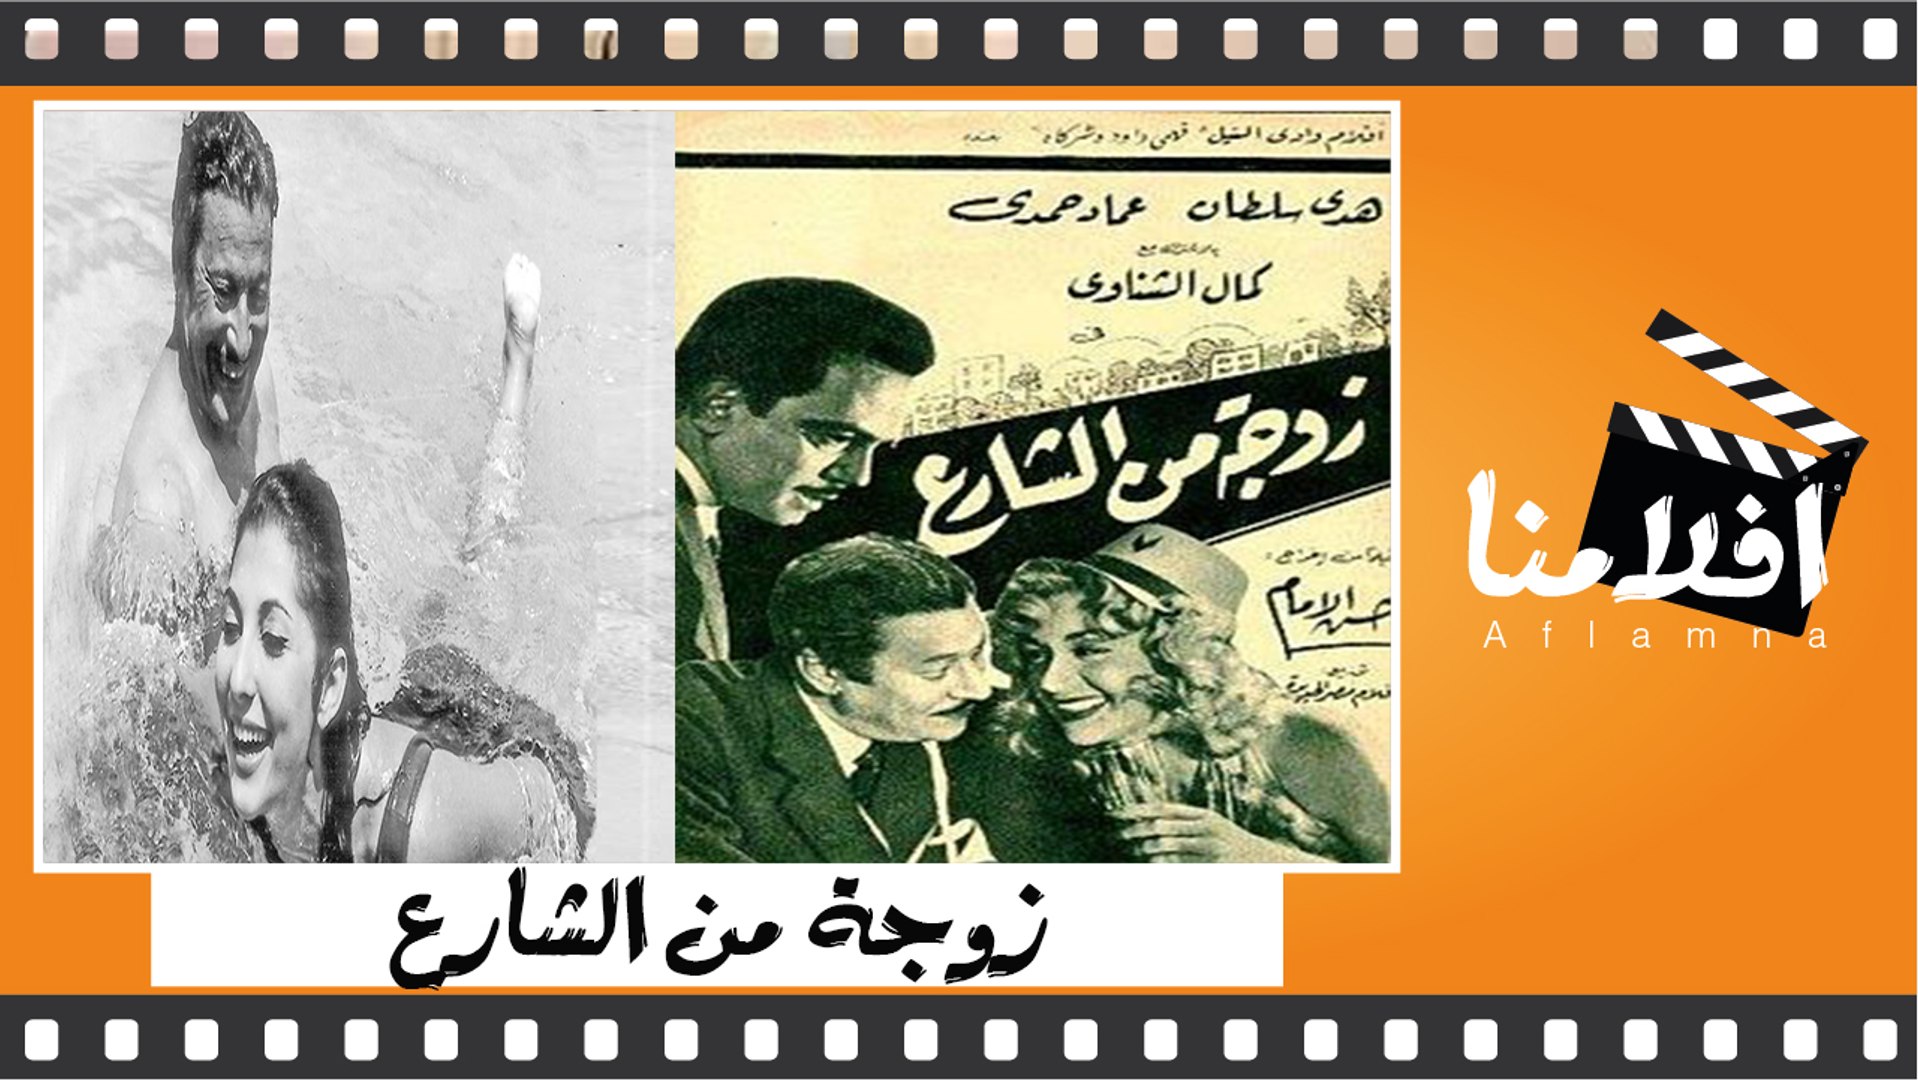 الفيلم العربي زوجة من الشارع - بطولة هدي سلطان وعماد حمدي ونادية الجندي -  فيديو Dailymotion